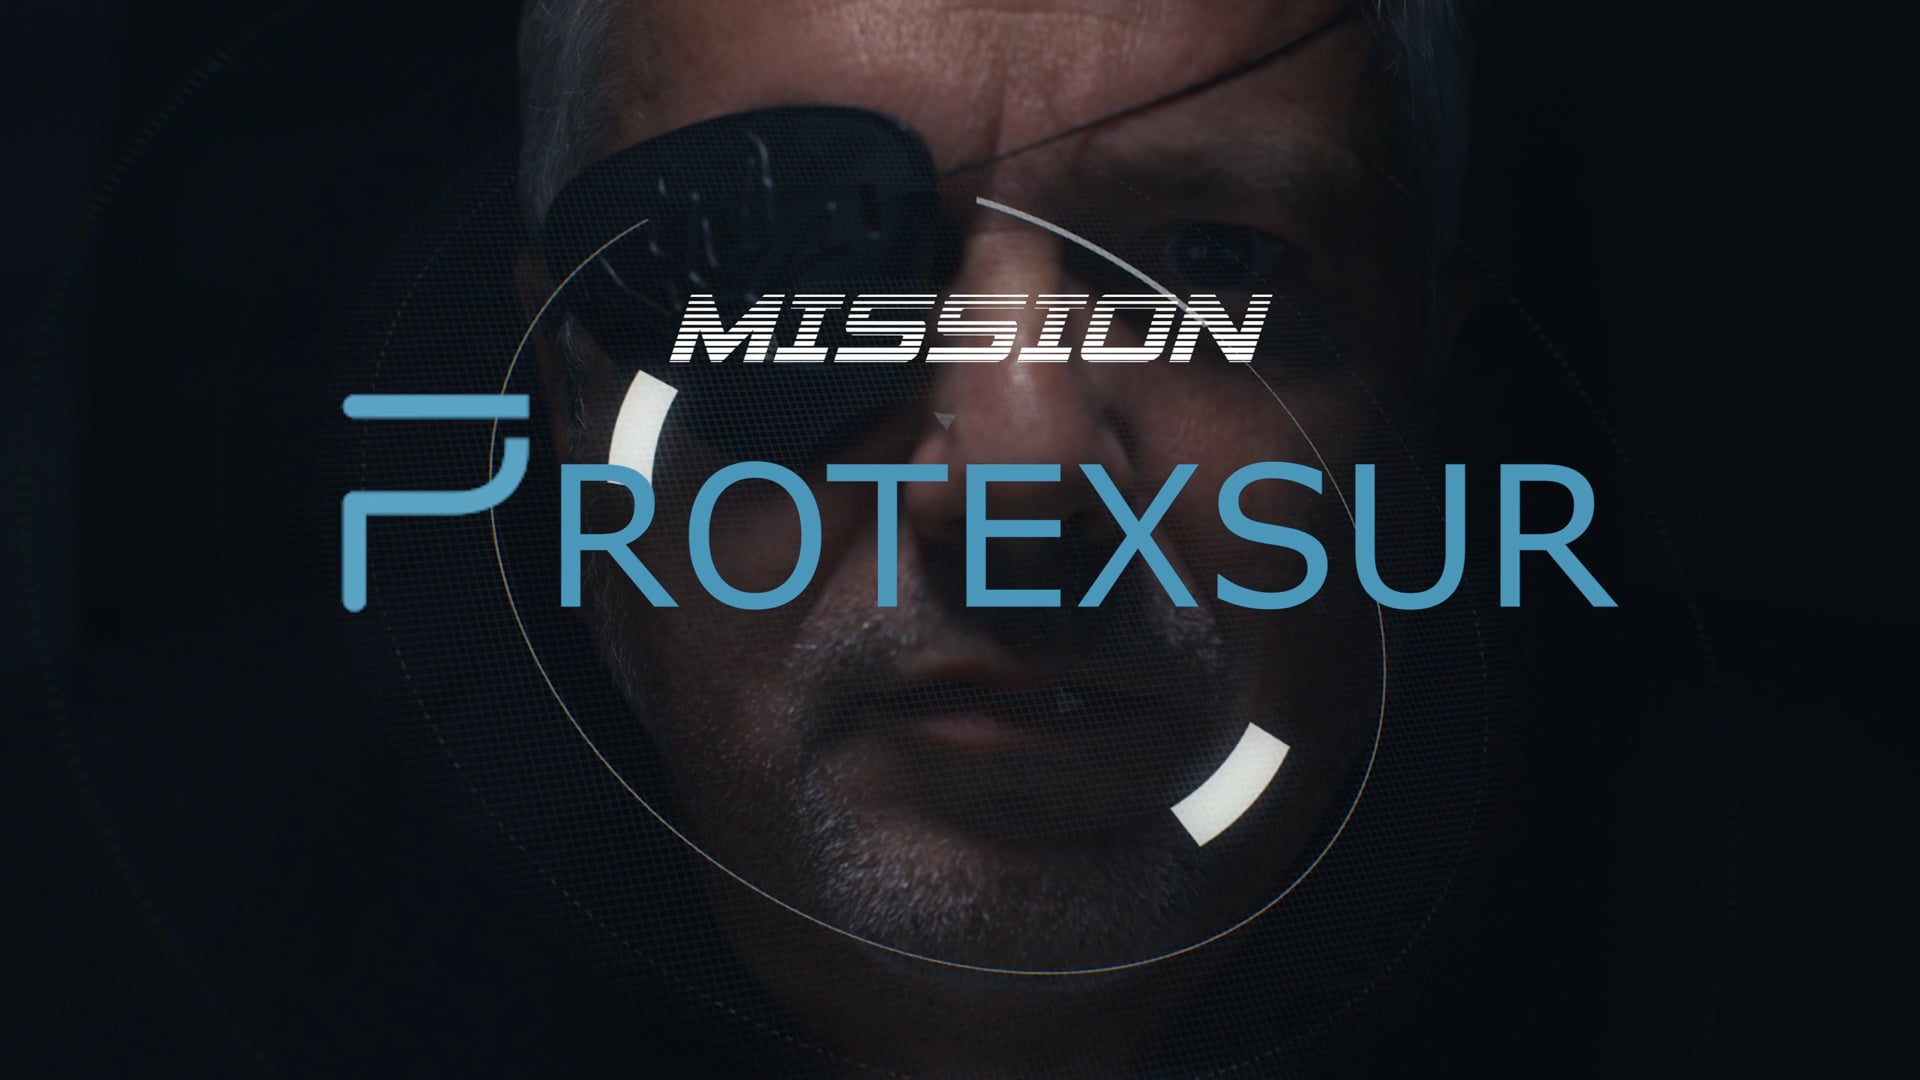 Mission: PROTEXSUR